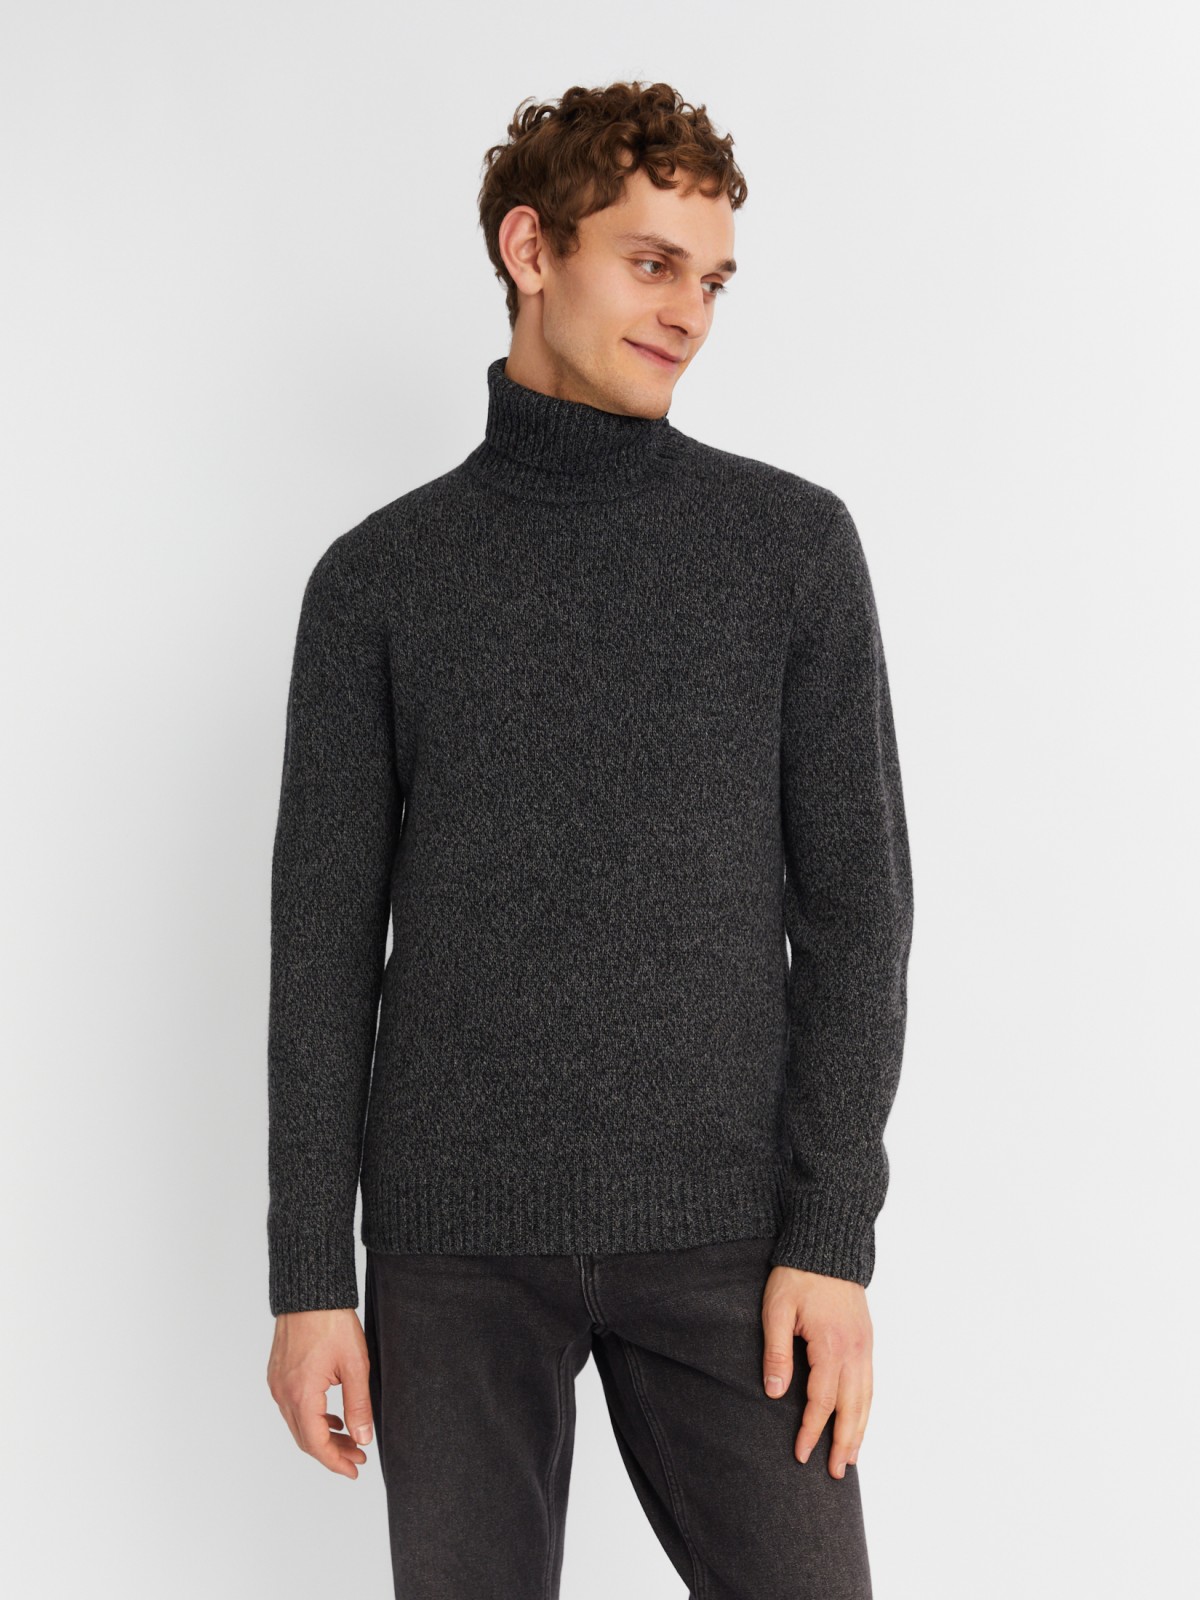 Вязаная шерстяная водолазка-свитер с горлом zolla 013436163012, цвет темно-серый, размер S